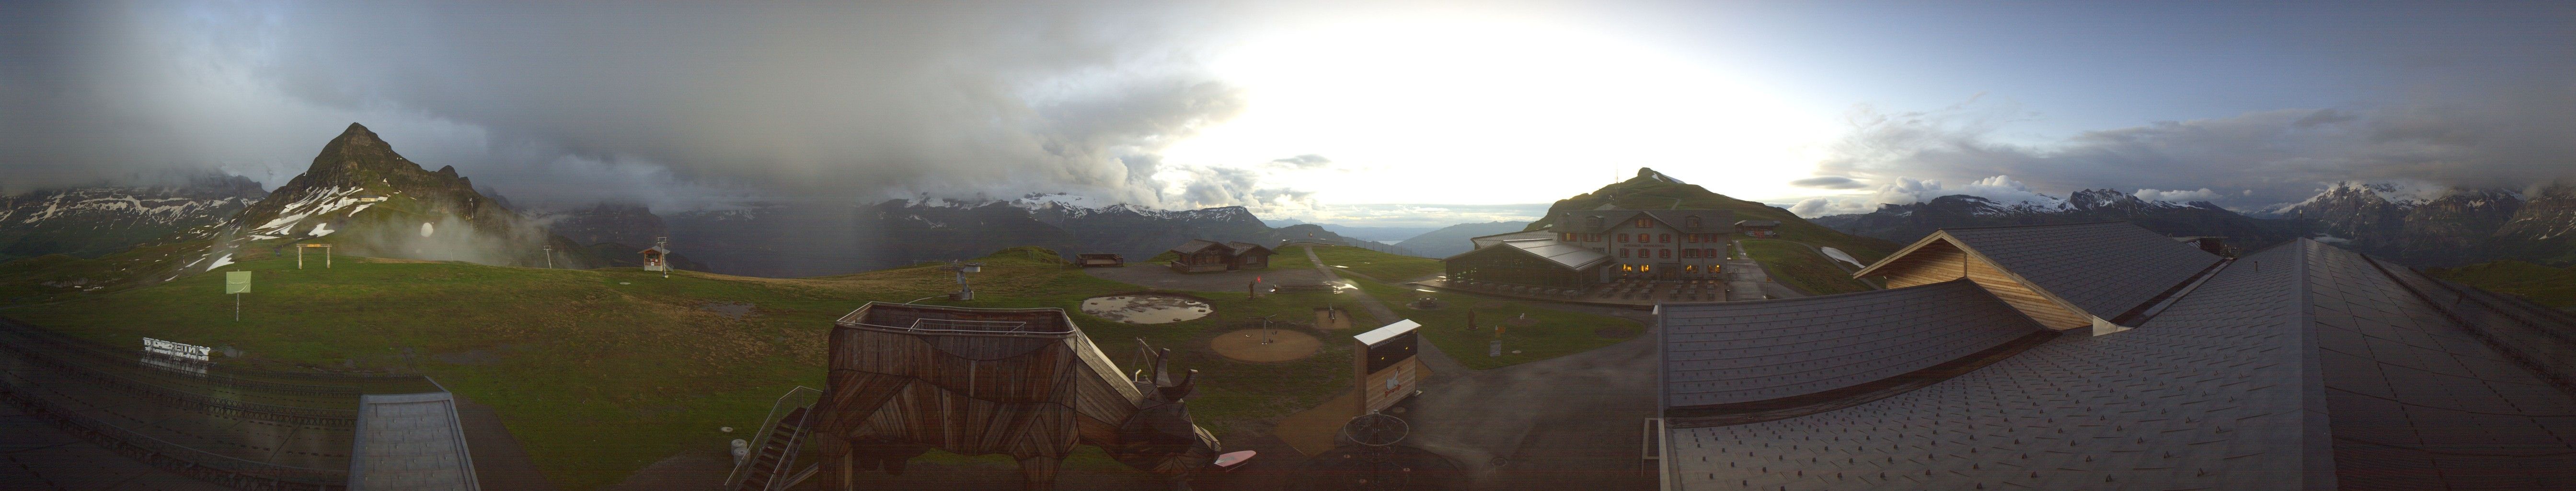 Grindelwald: Männlichen Bergstation Wengen